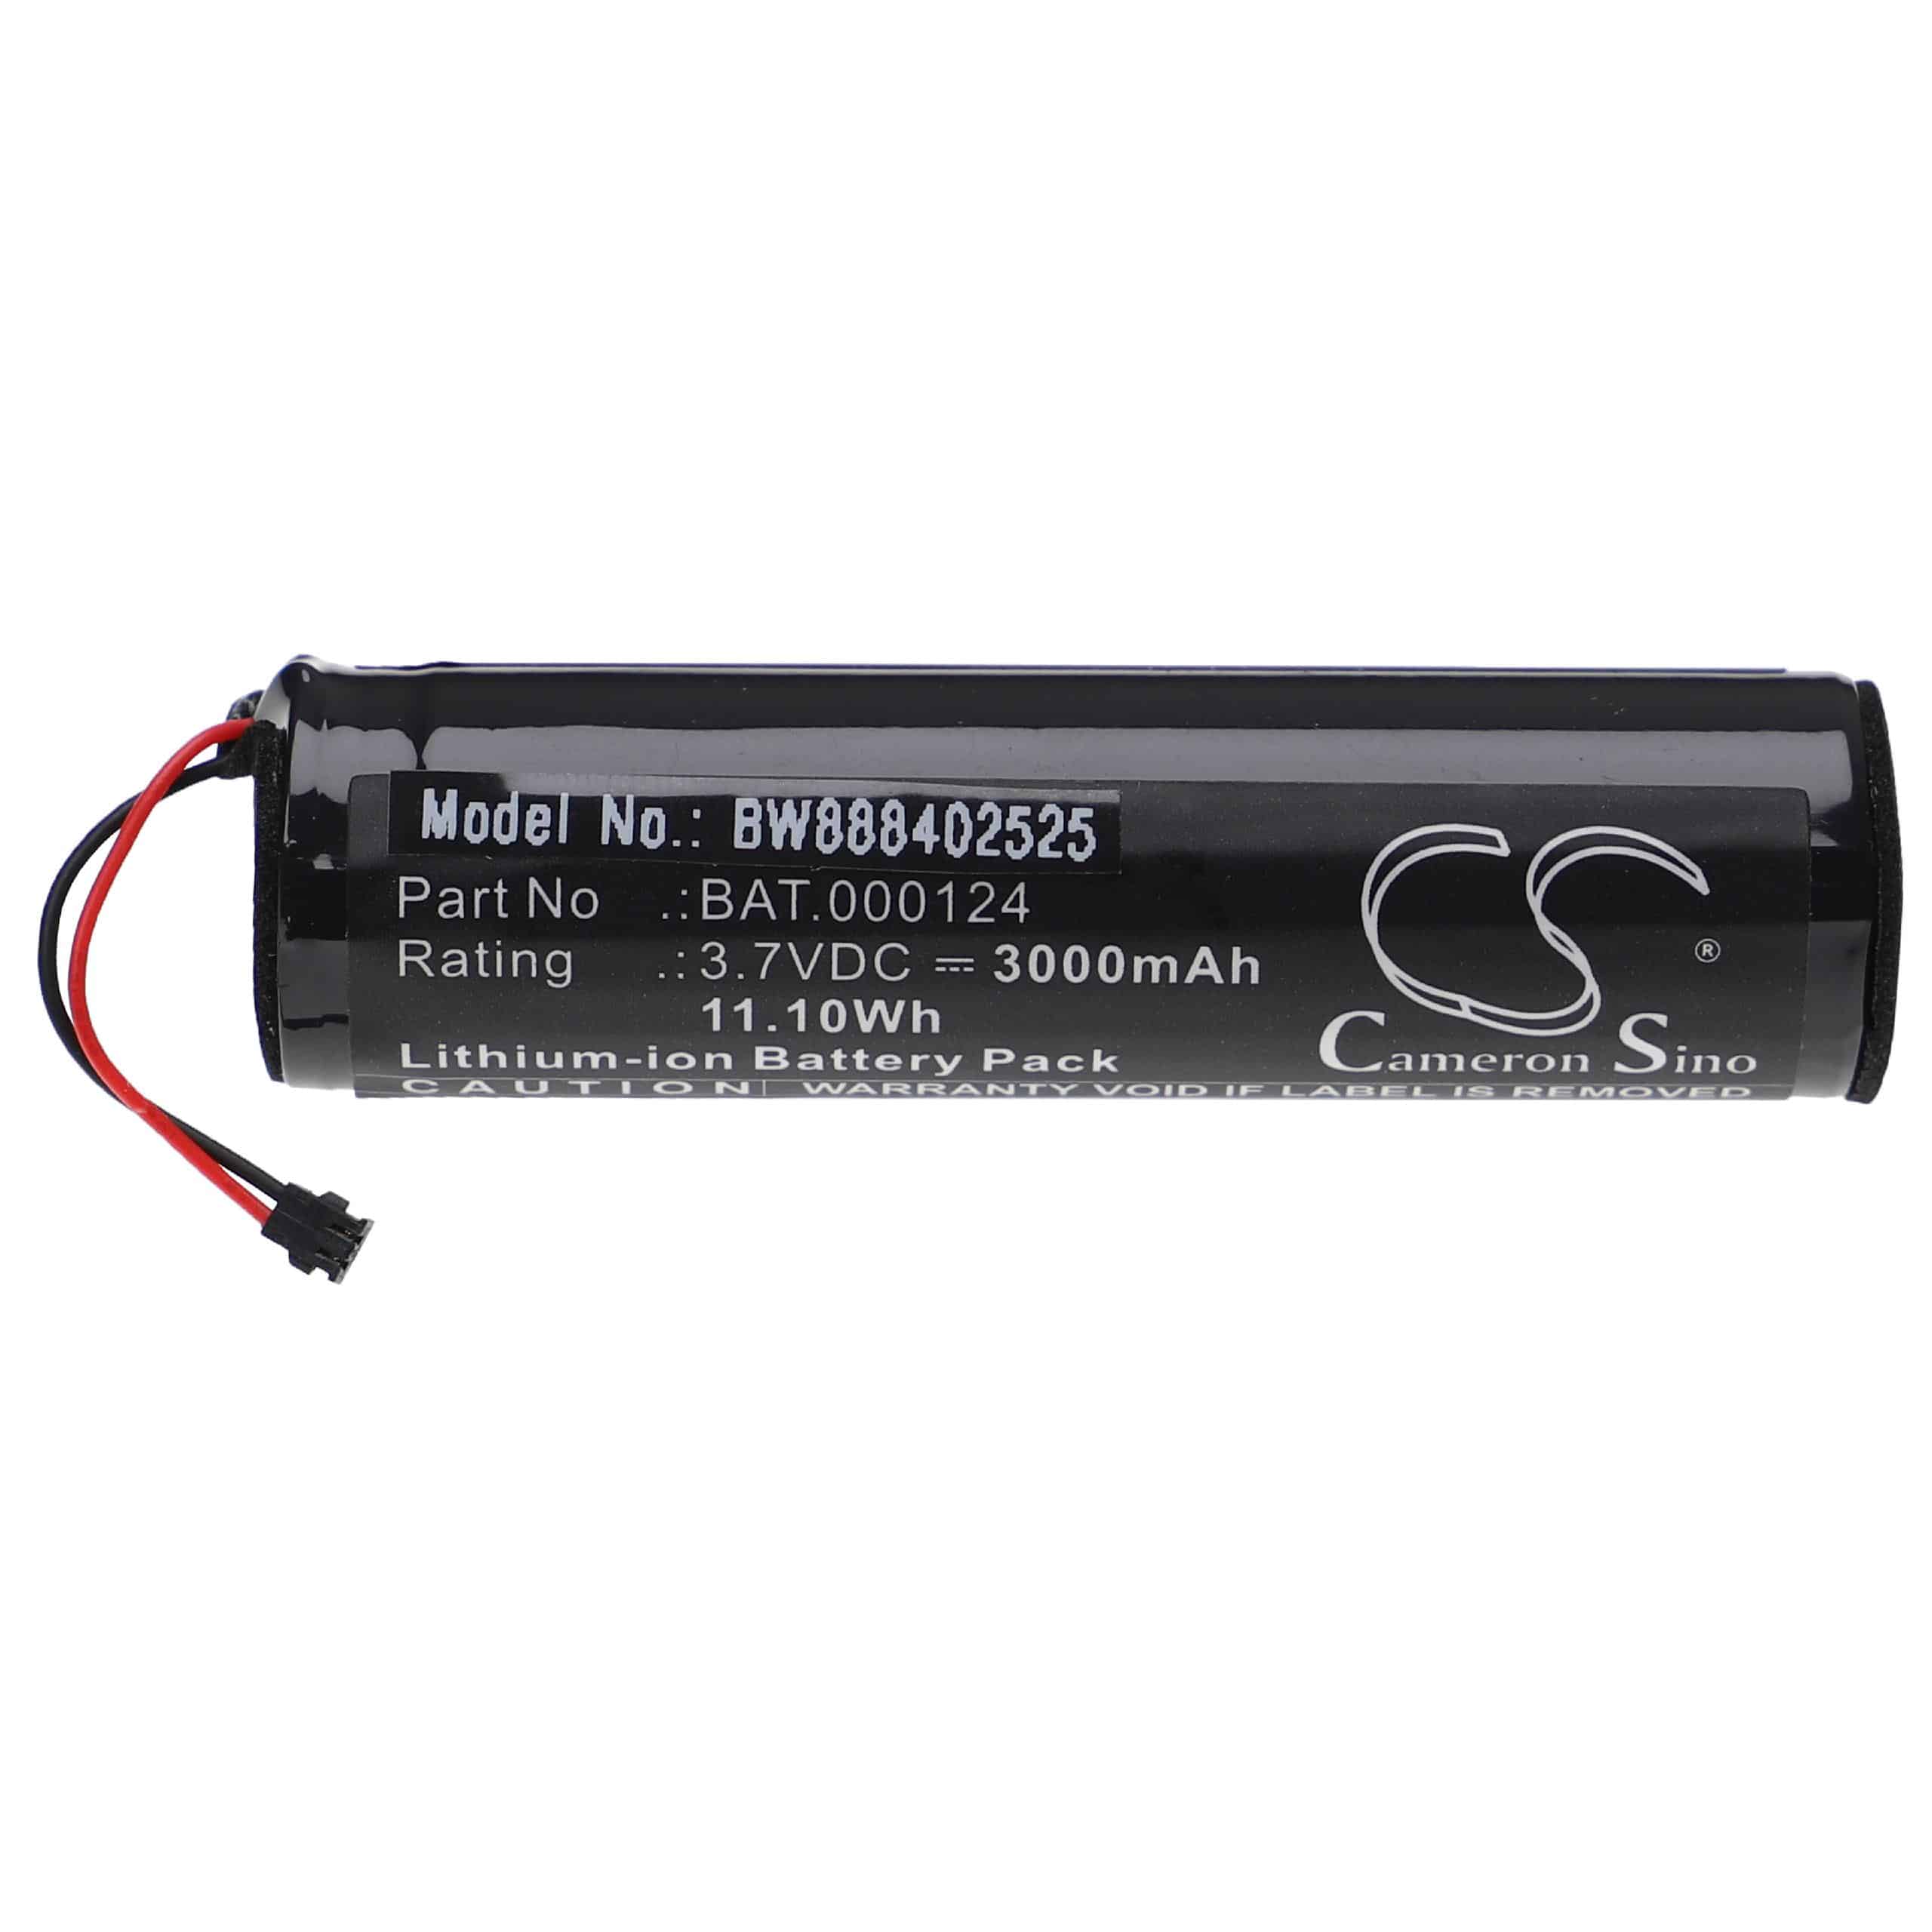 Akumulator do e papierosa zamiennik Philip Morris BAT.000124 - 3000 mAh 3,7 V Li-Ion